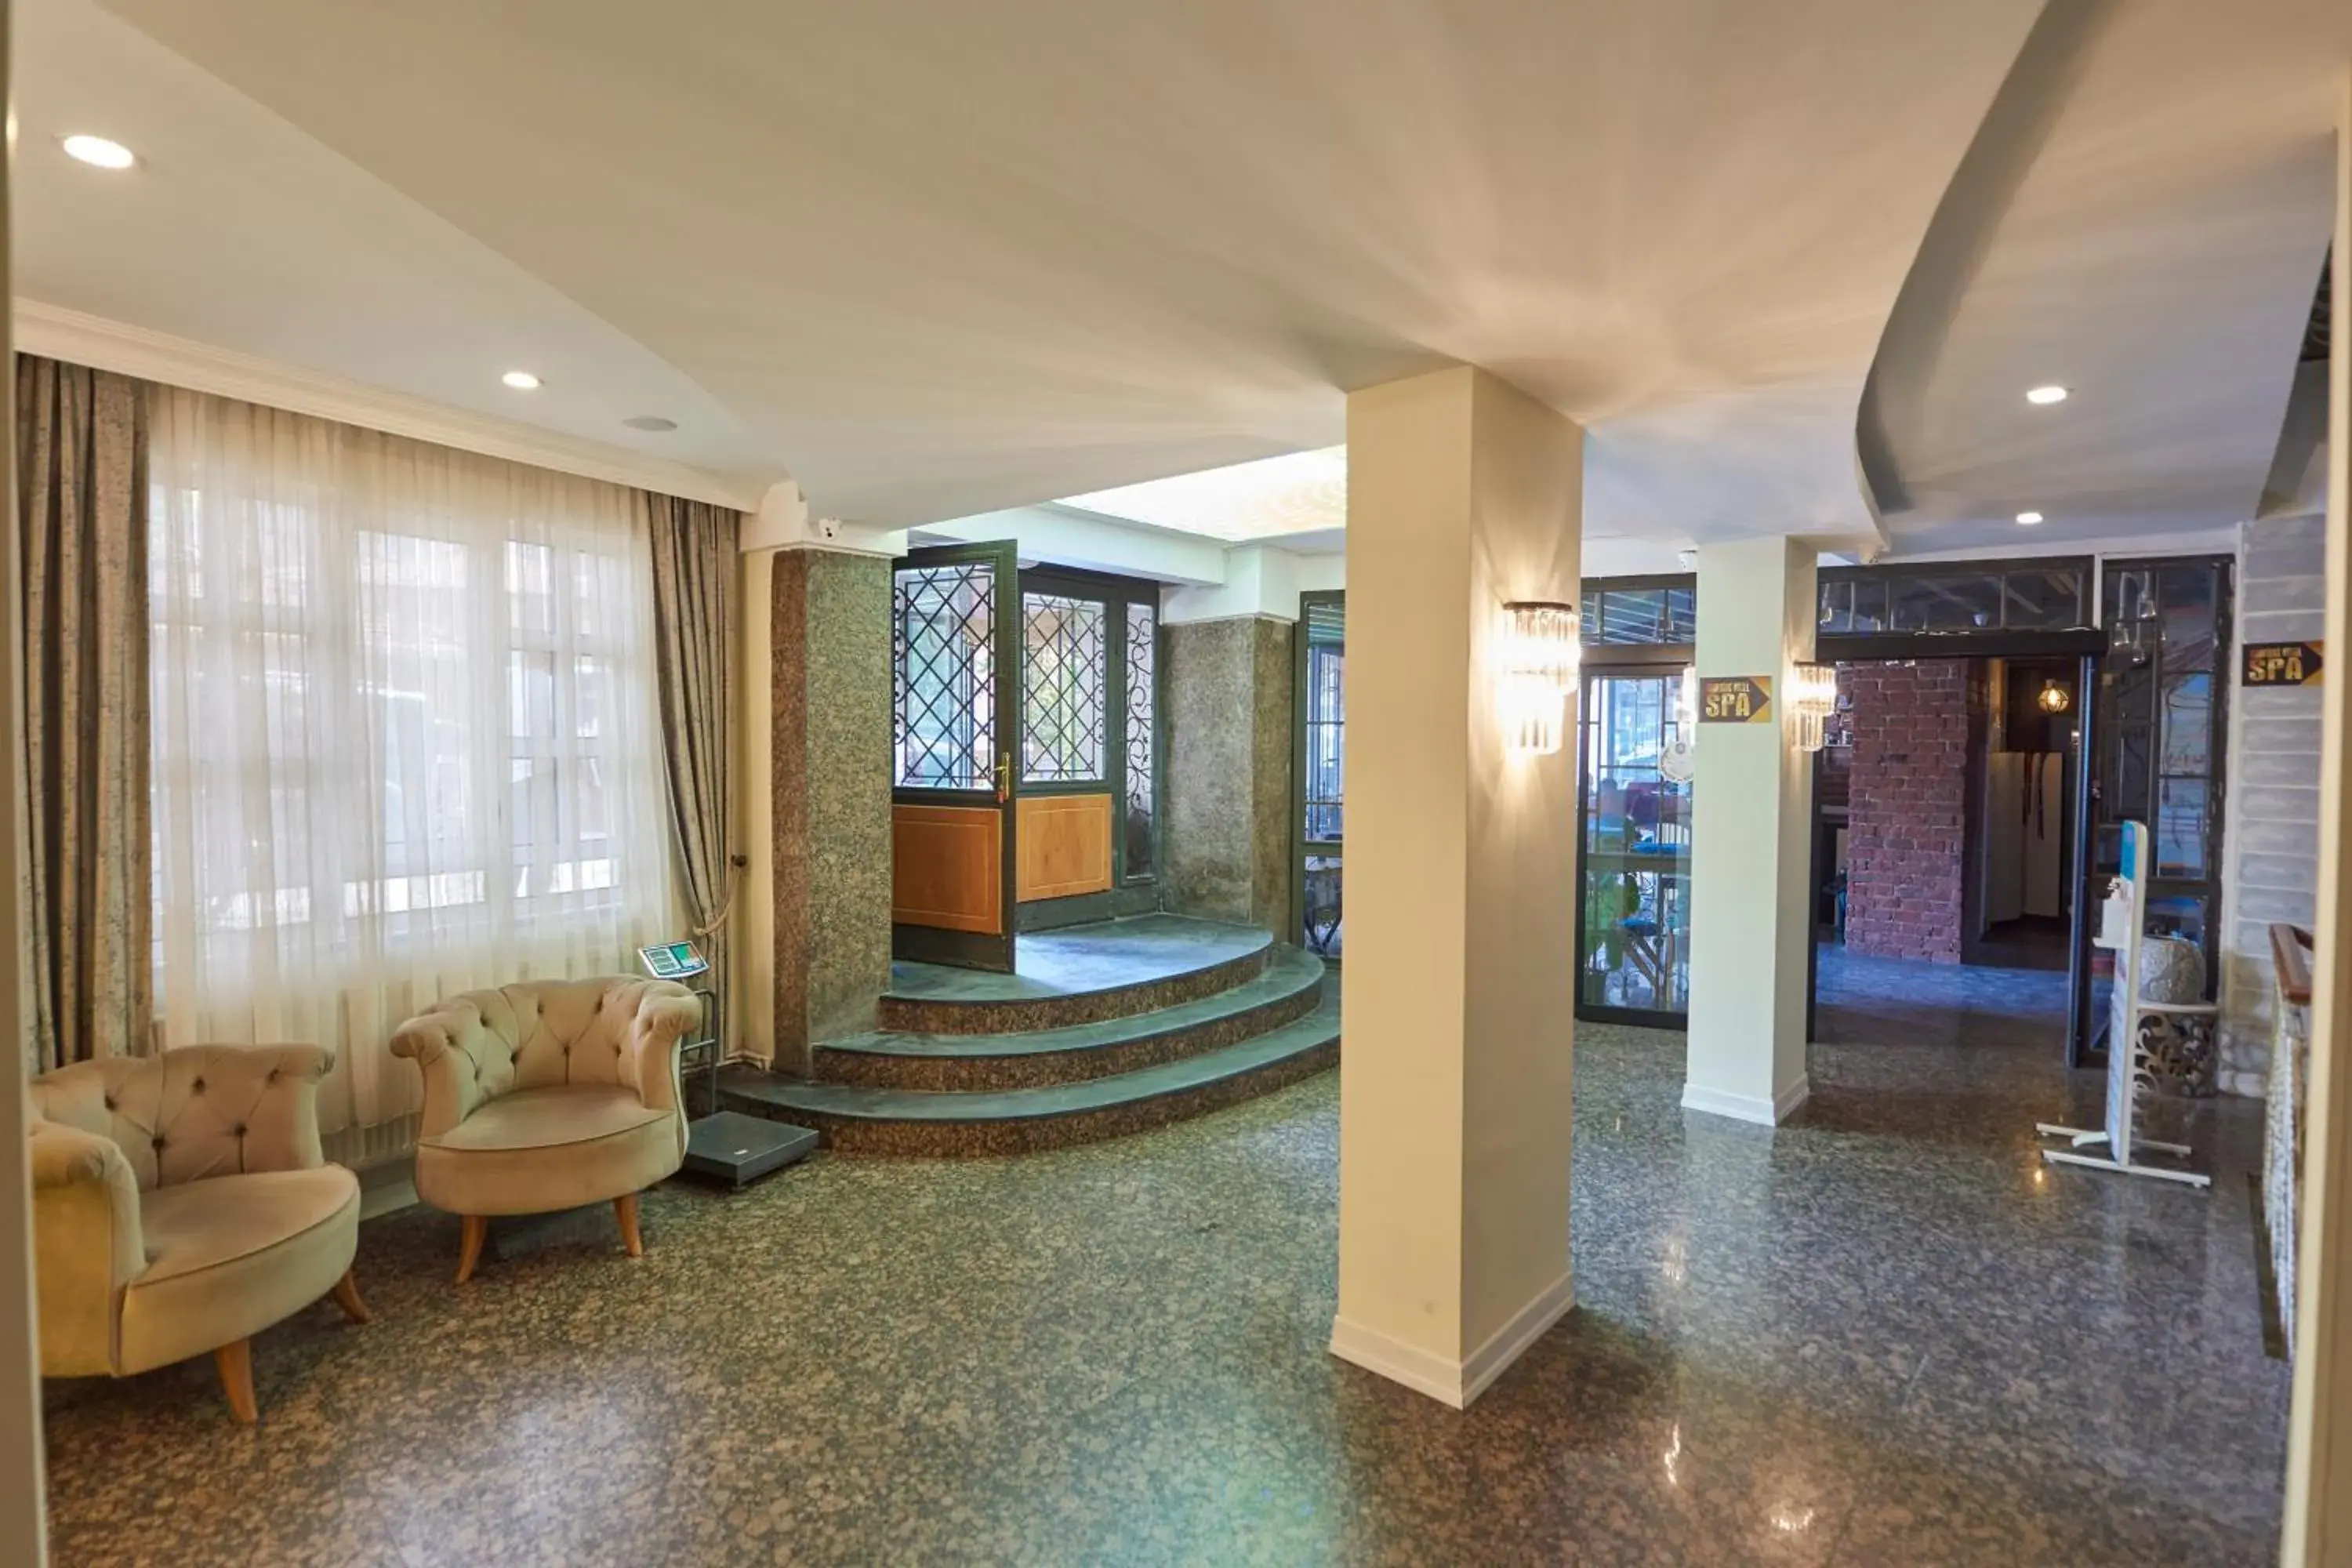 Lobby or reception, Bathroom in Sunlight Hotel & SPA